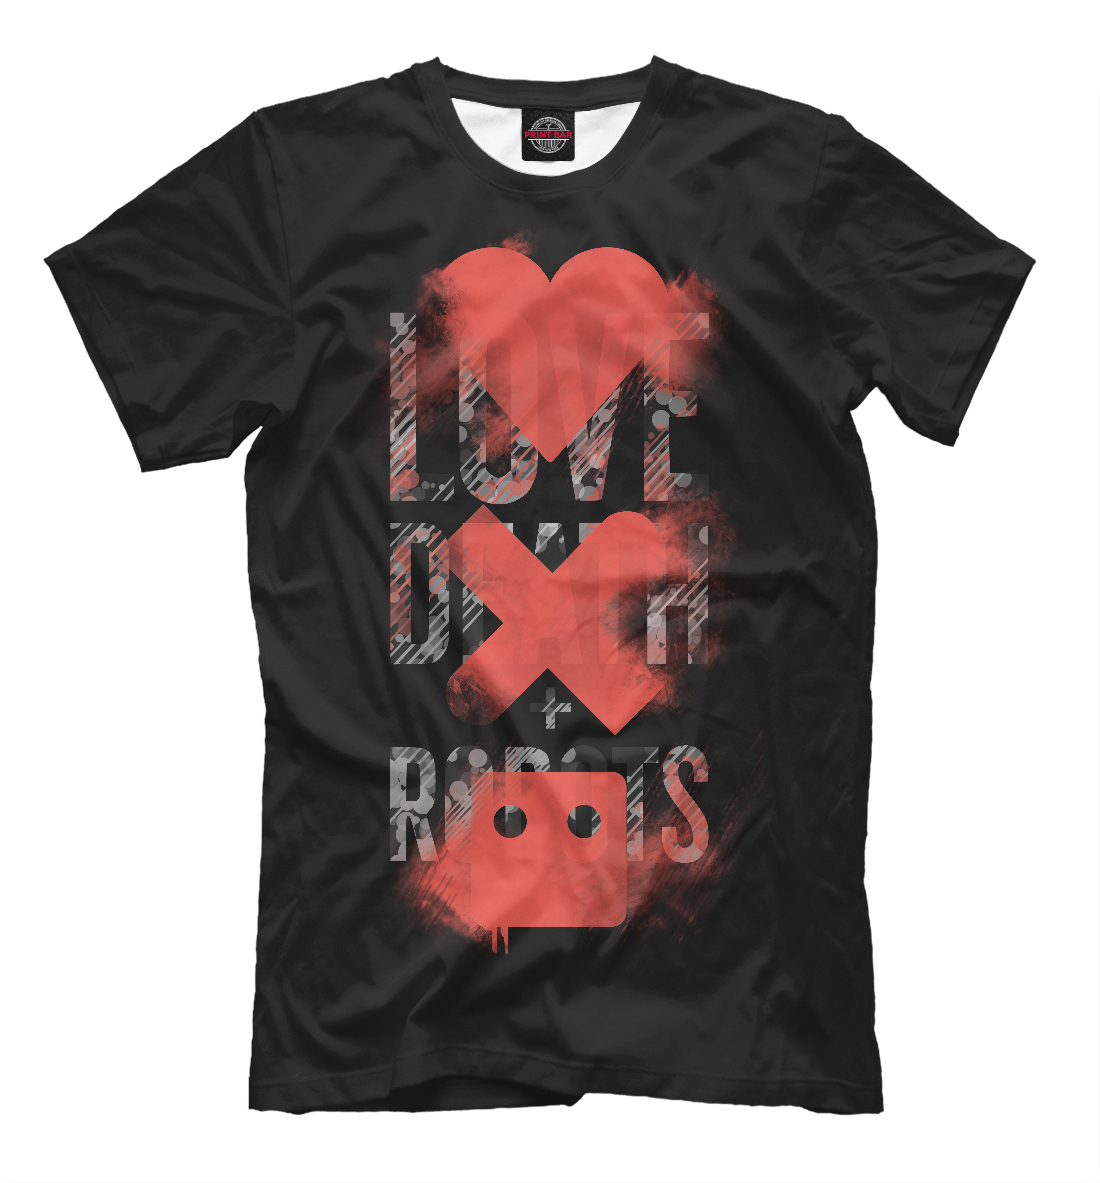 Мужская футболка с принтом Любовь, смерть и роботы